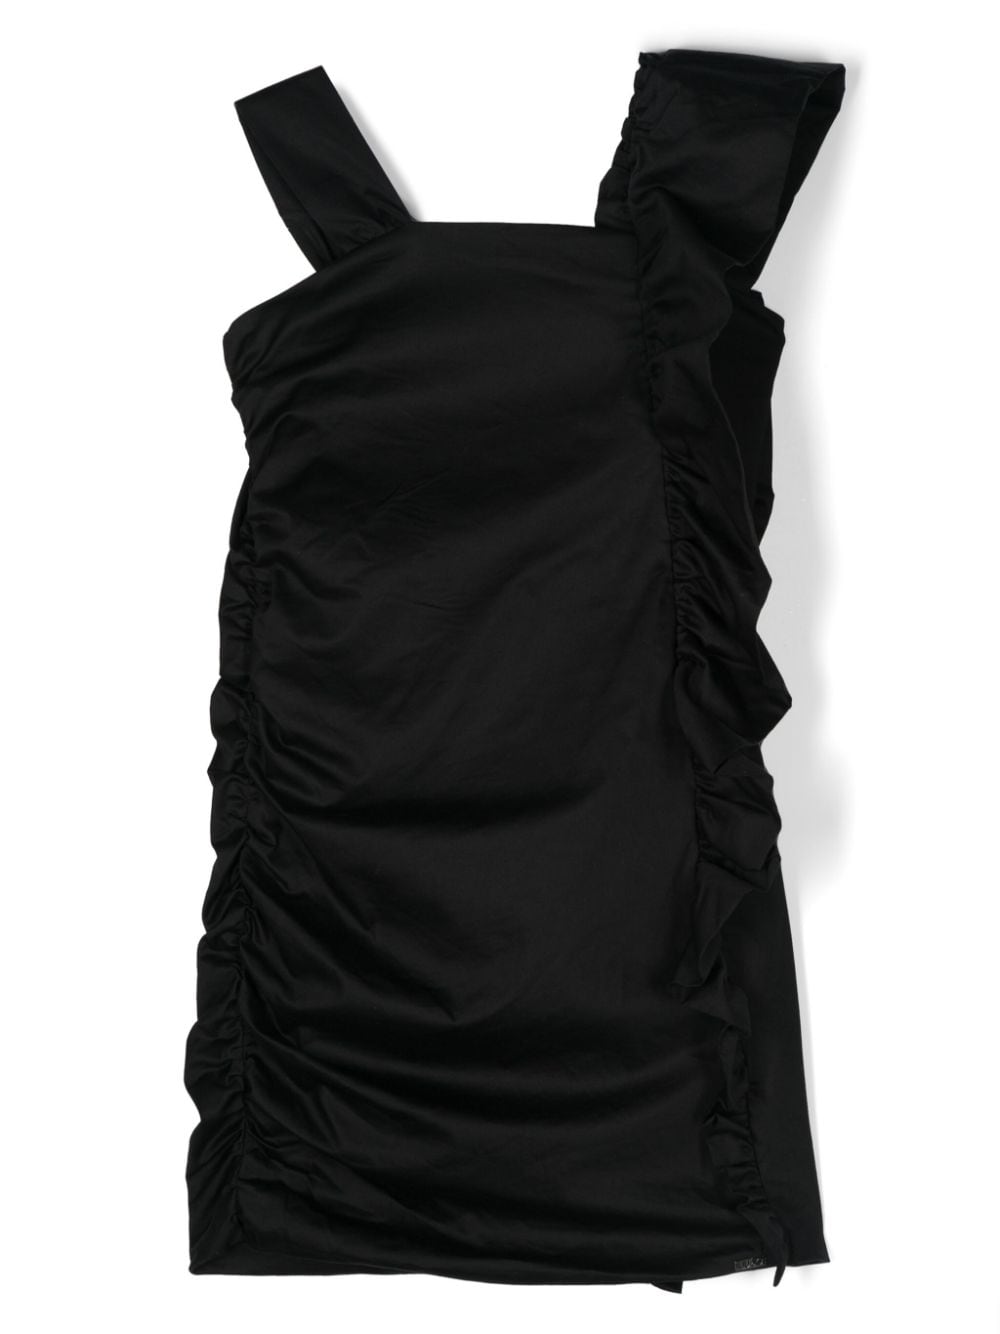 Black dress for little girls